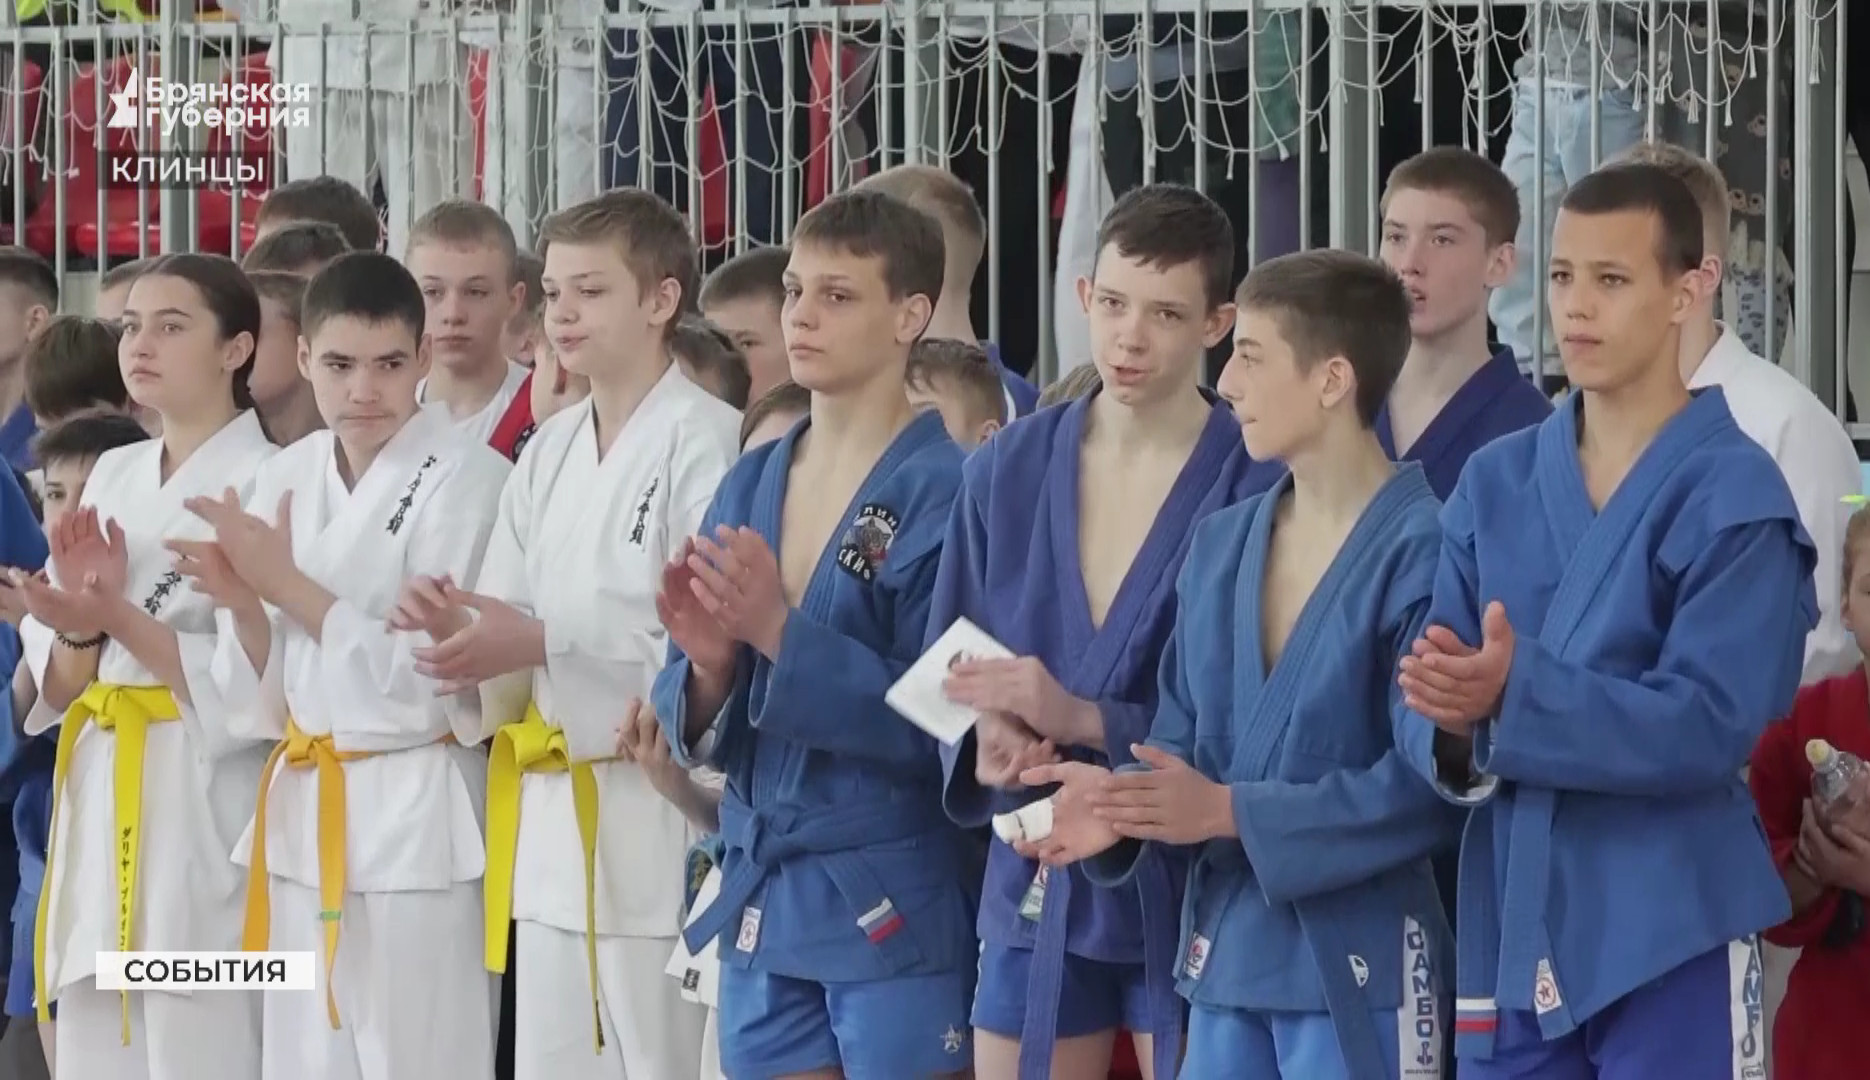 Около 300 юных спортсменов выступили на пасхальном фестивале единоборств в Клинцах